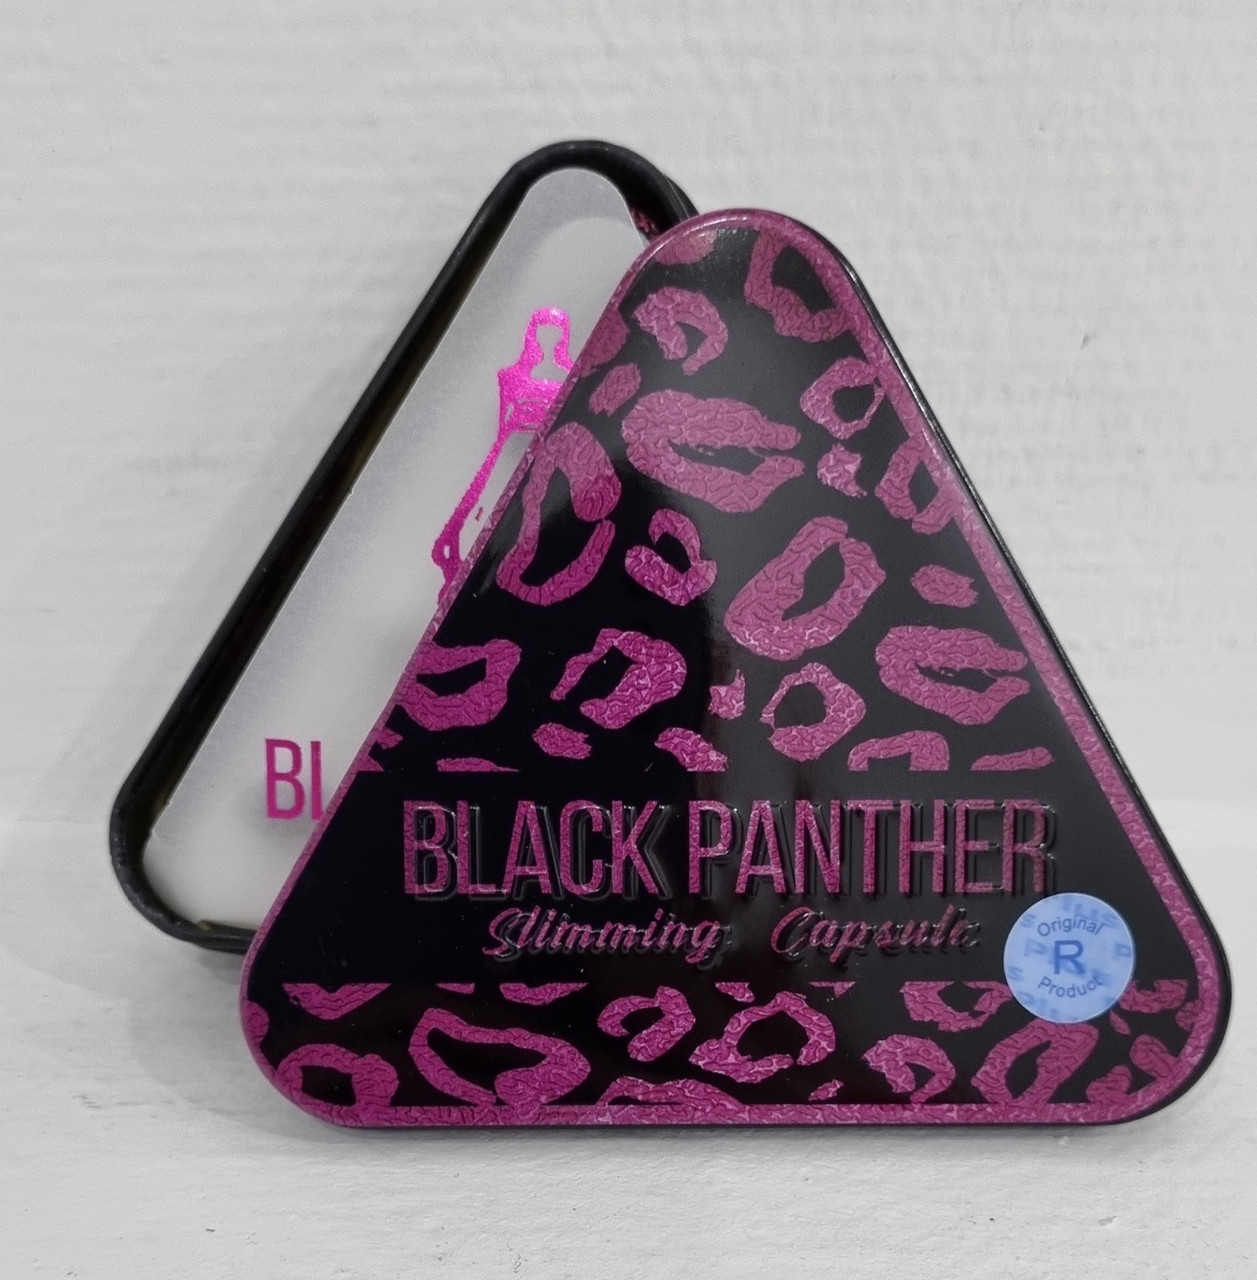 Чёрная пантера  Black panther 36 капсул